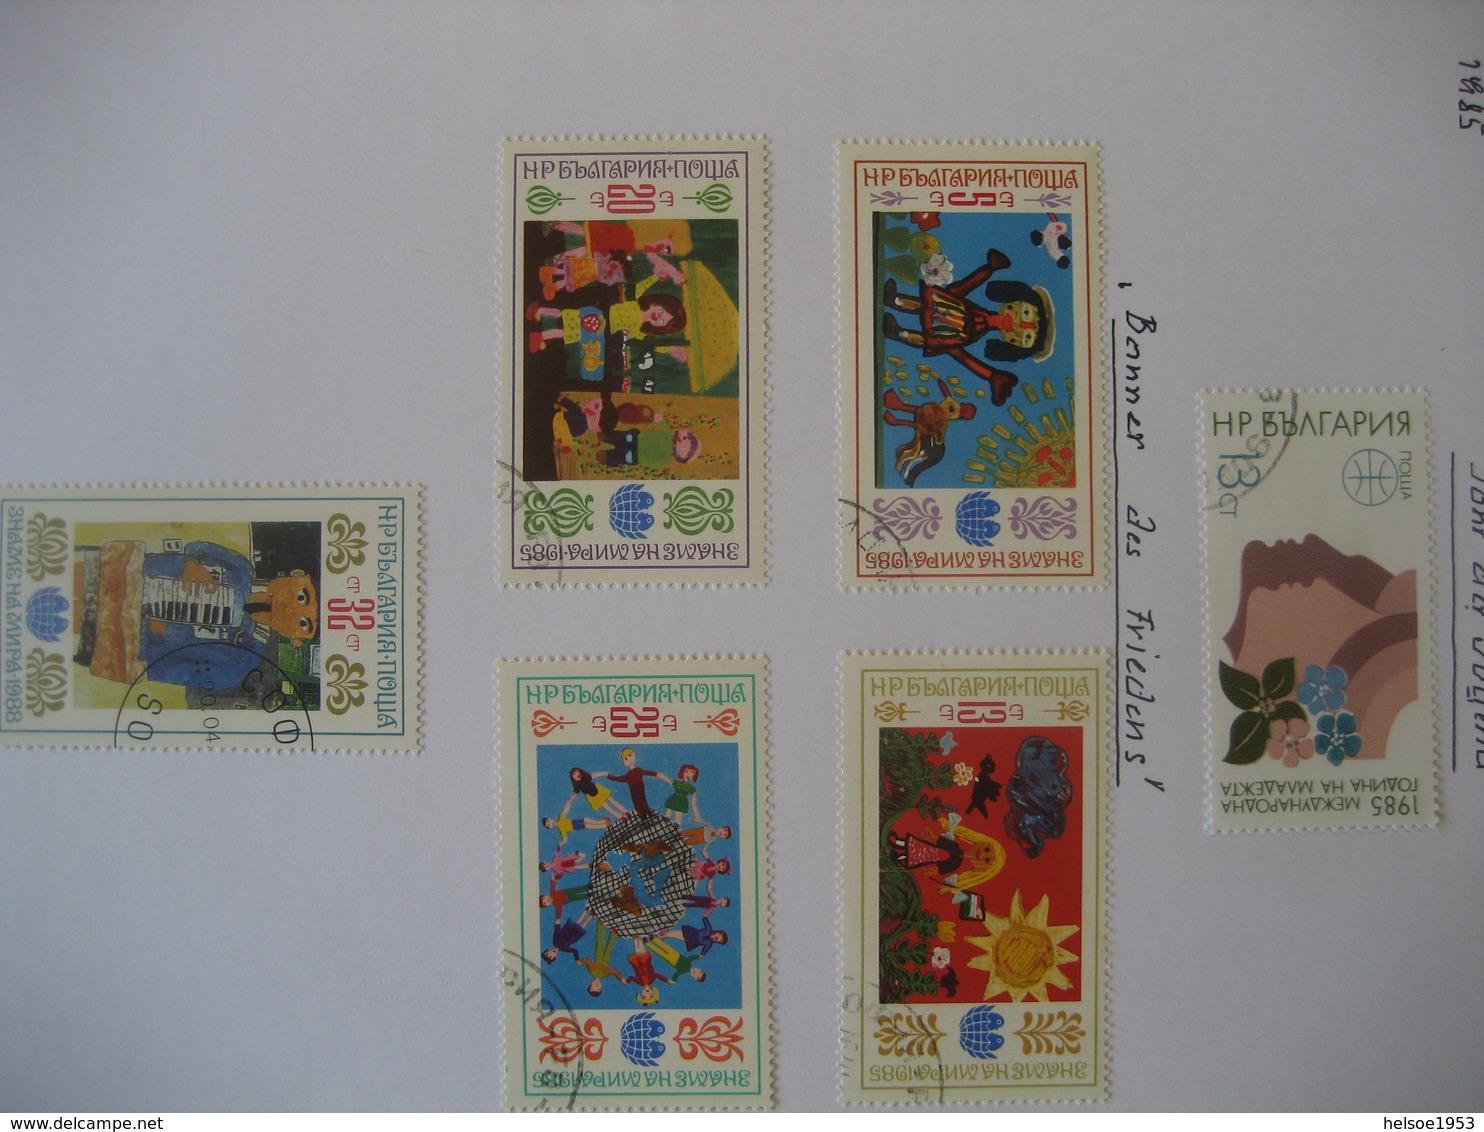 Bulgarien 1985- Kleines Lot Briefmarken Der 80er Jahre Gestempelt - Lots & Serien